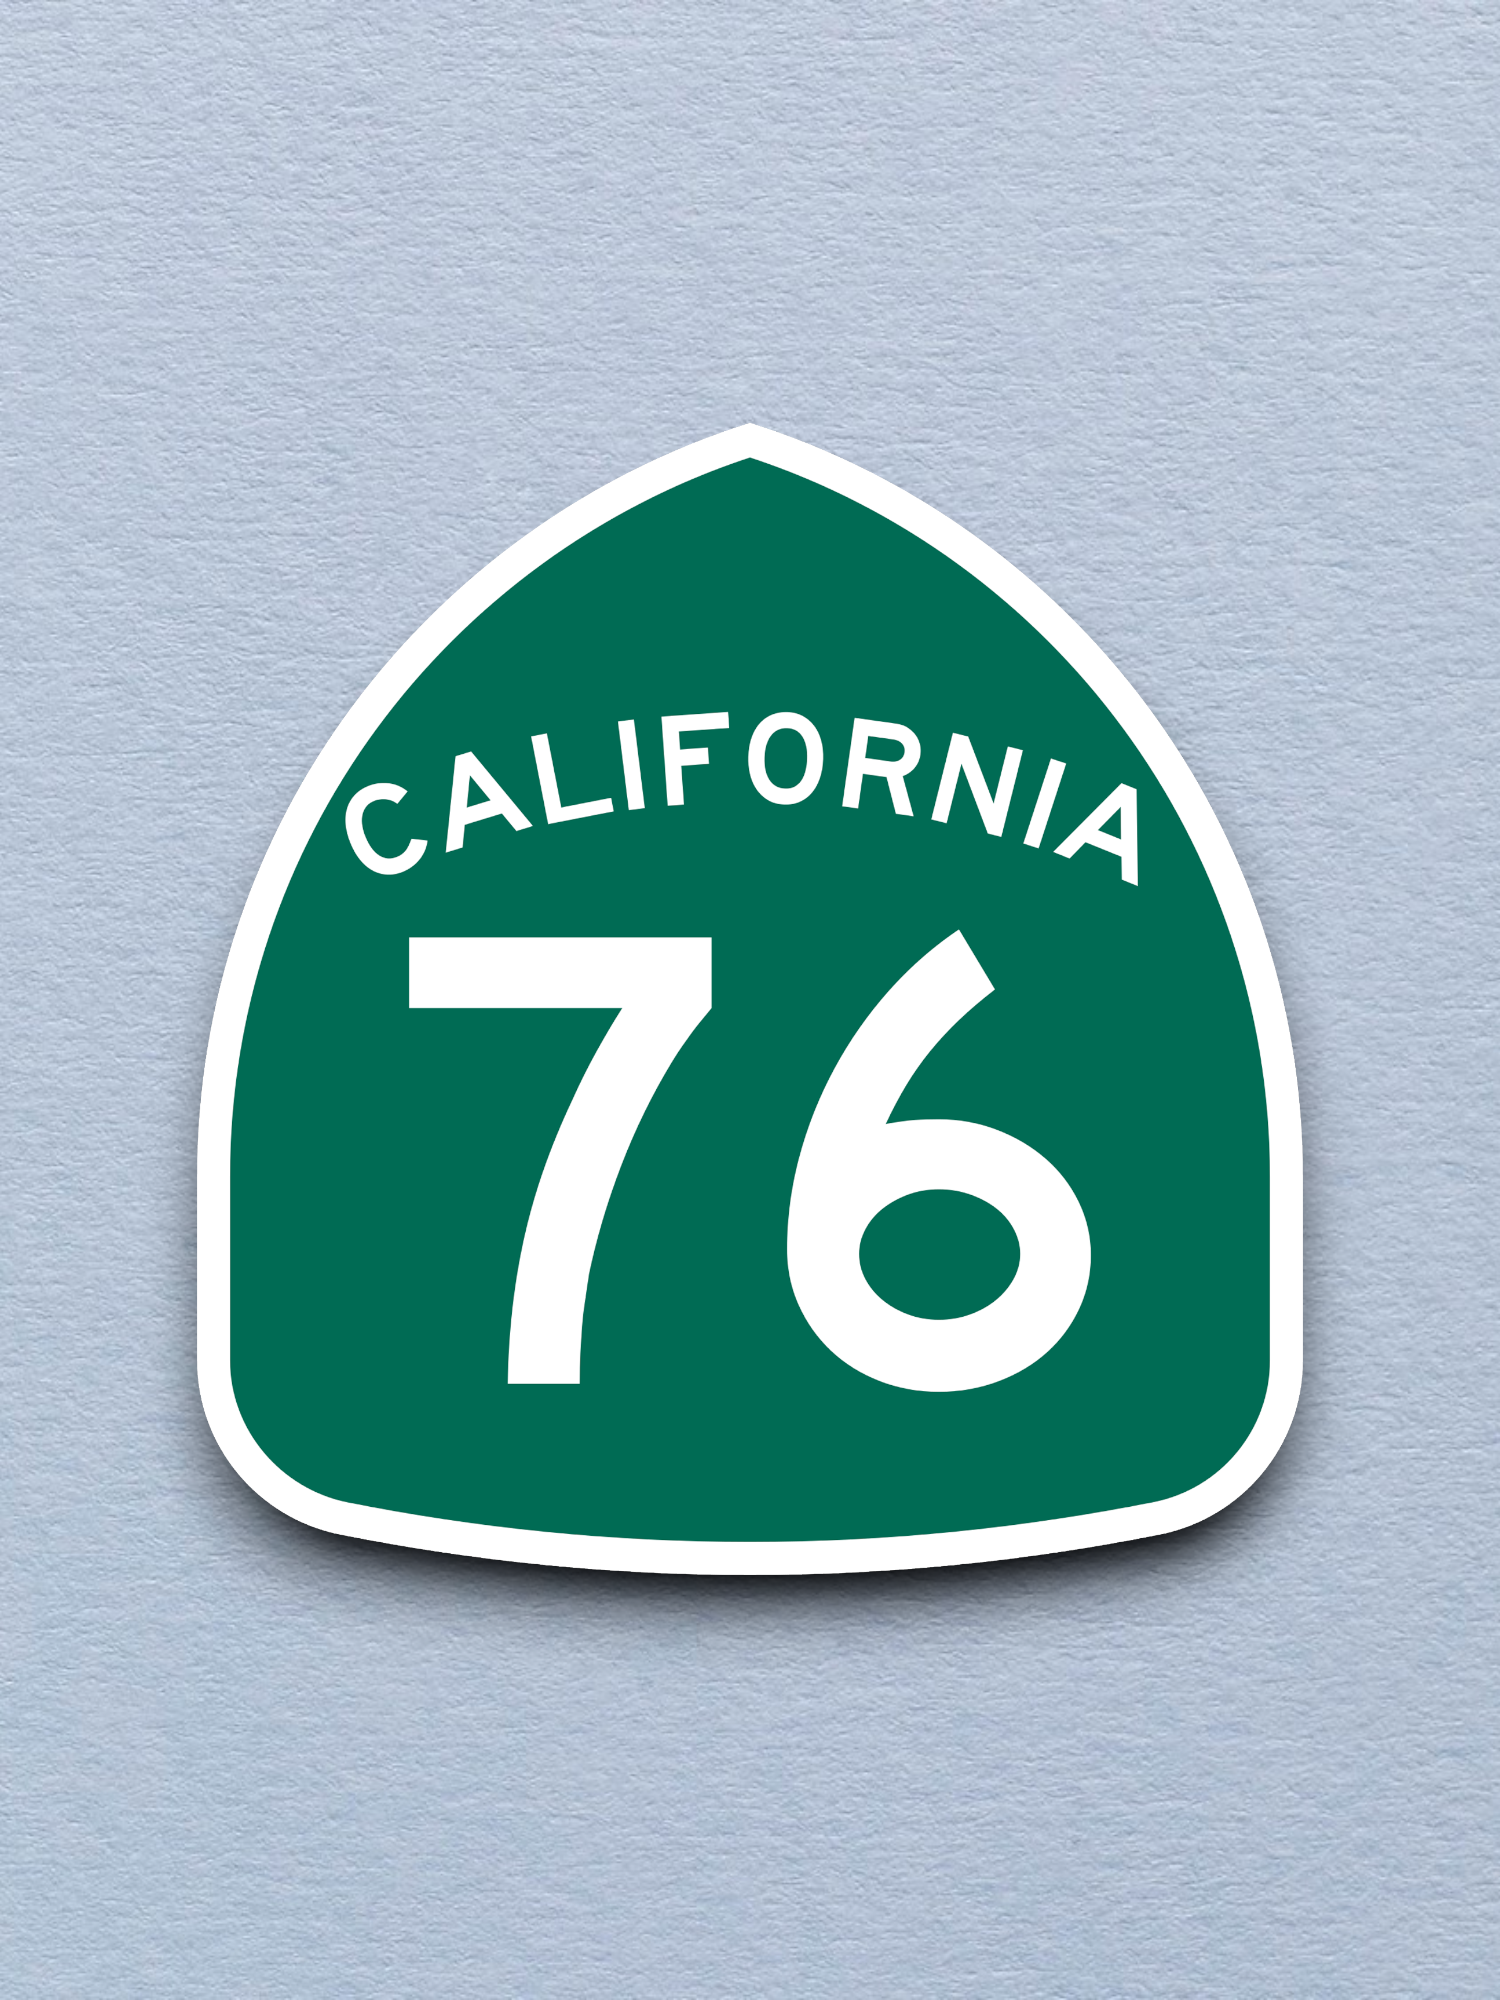 California State Route 76 Sticker